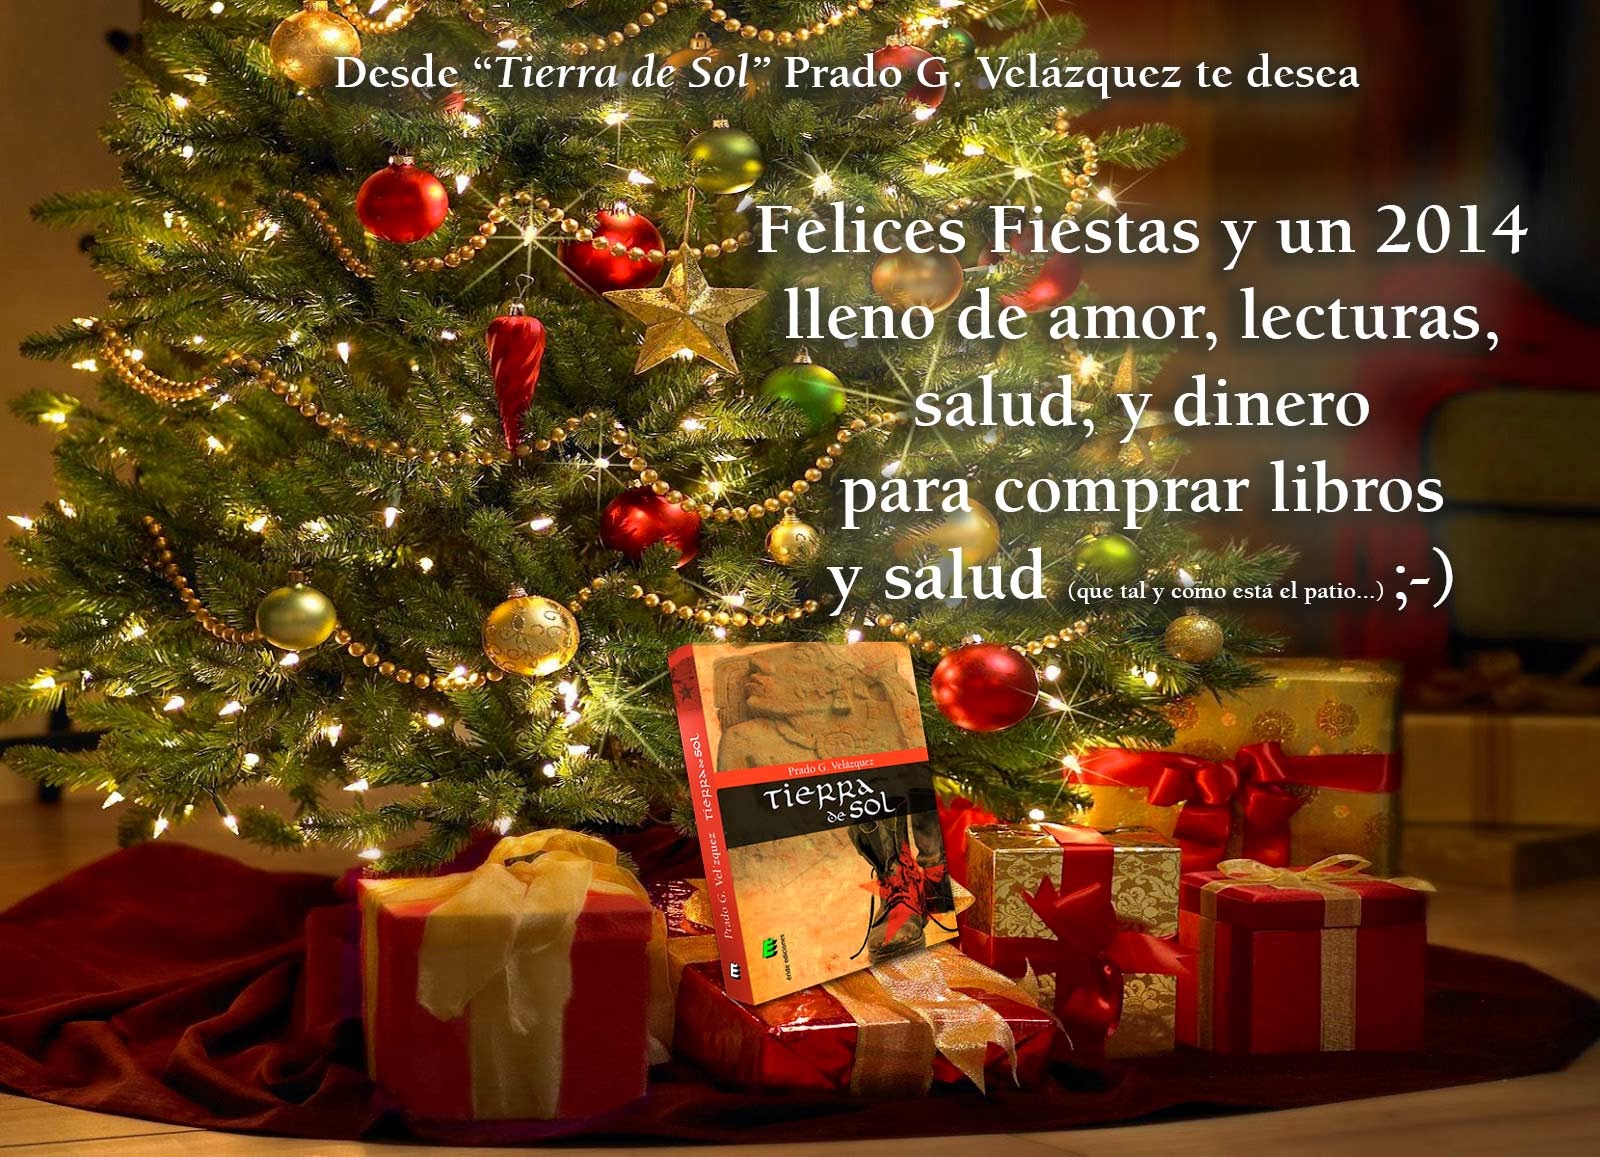 Prado G. Velázquez te desea Felices Fiestas 2013/2014 desde "Tierra De Sol"